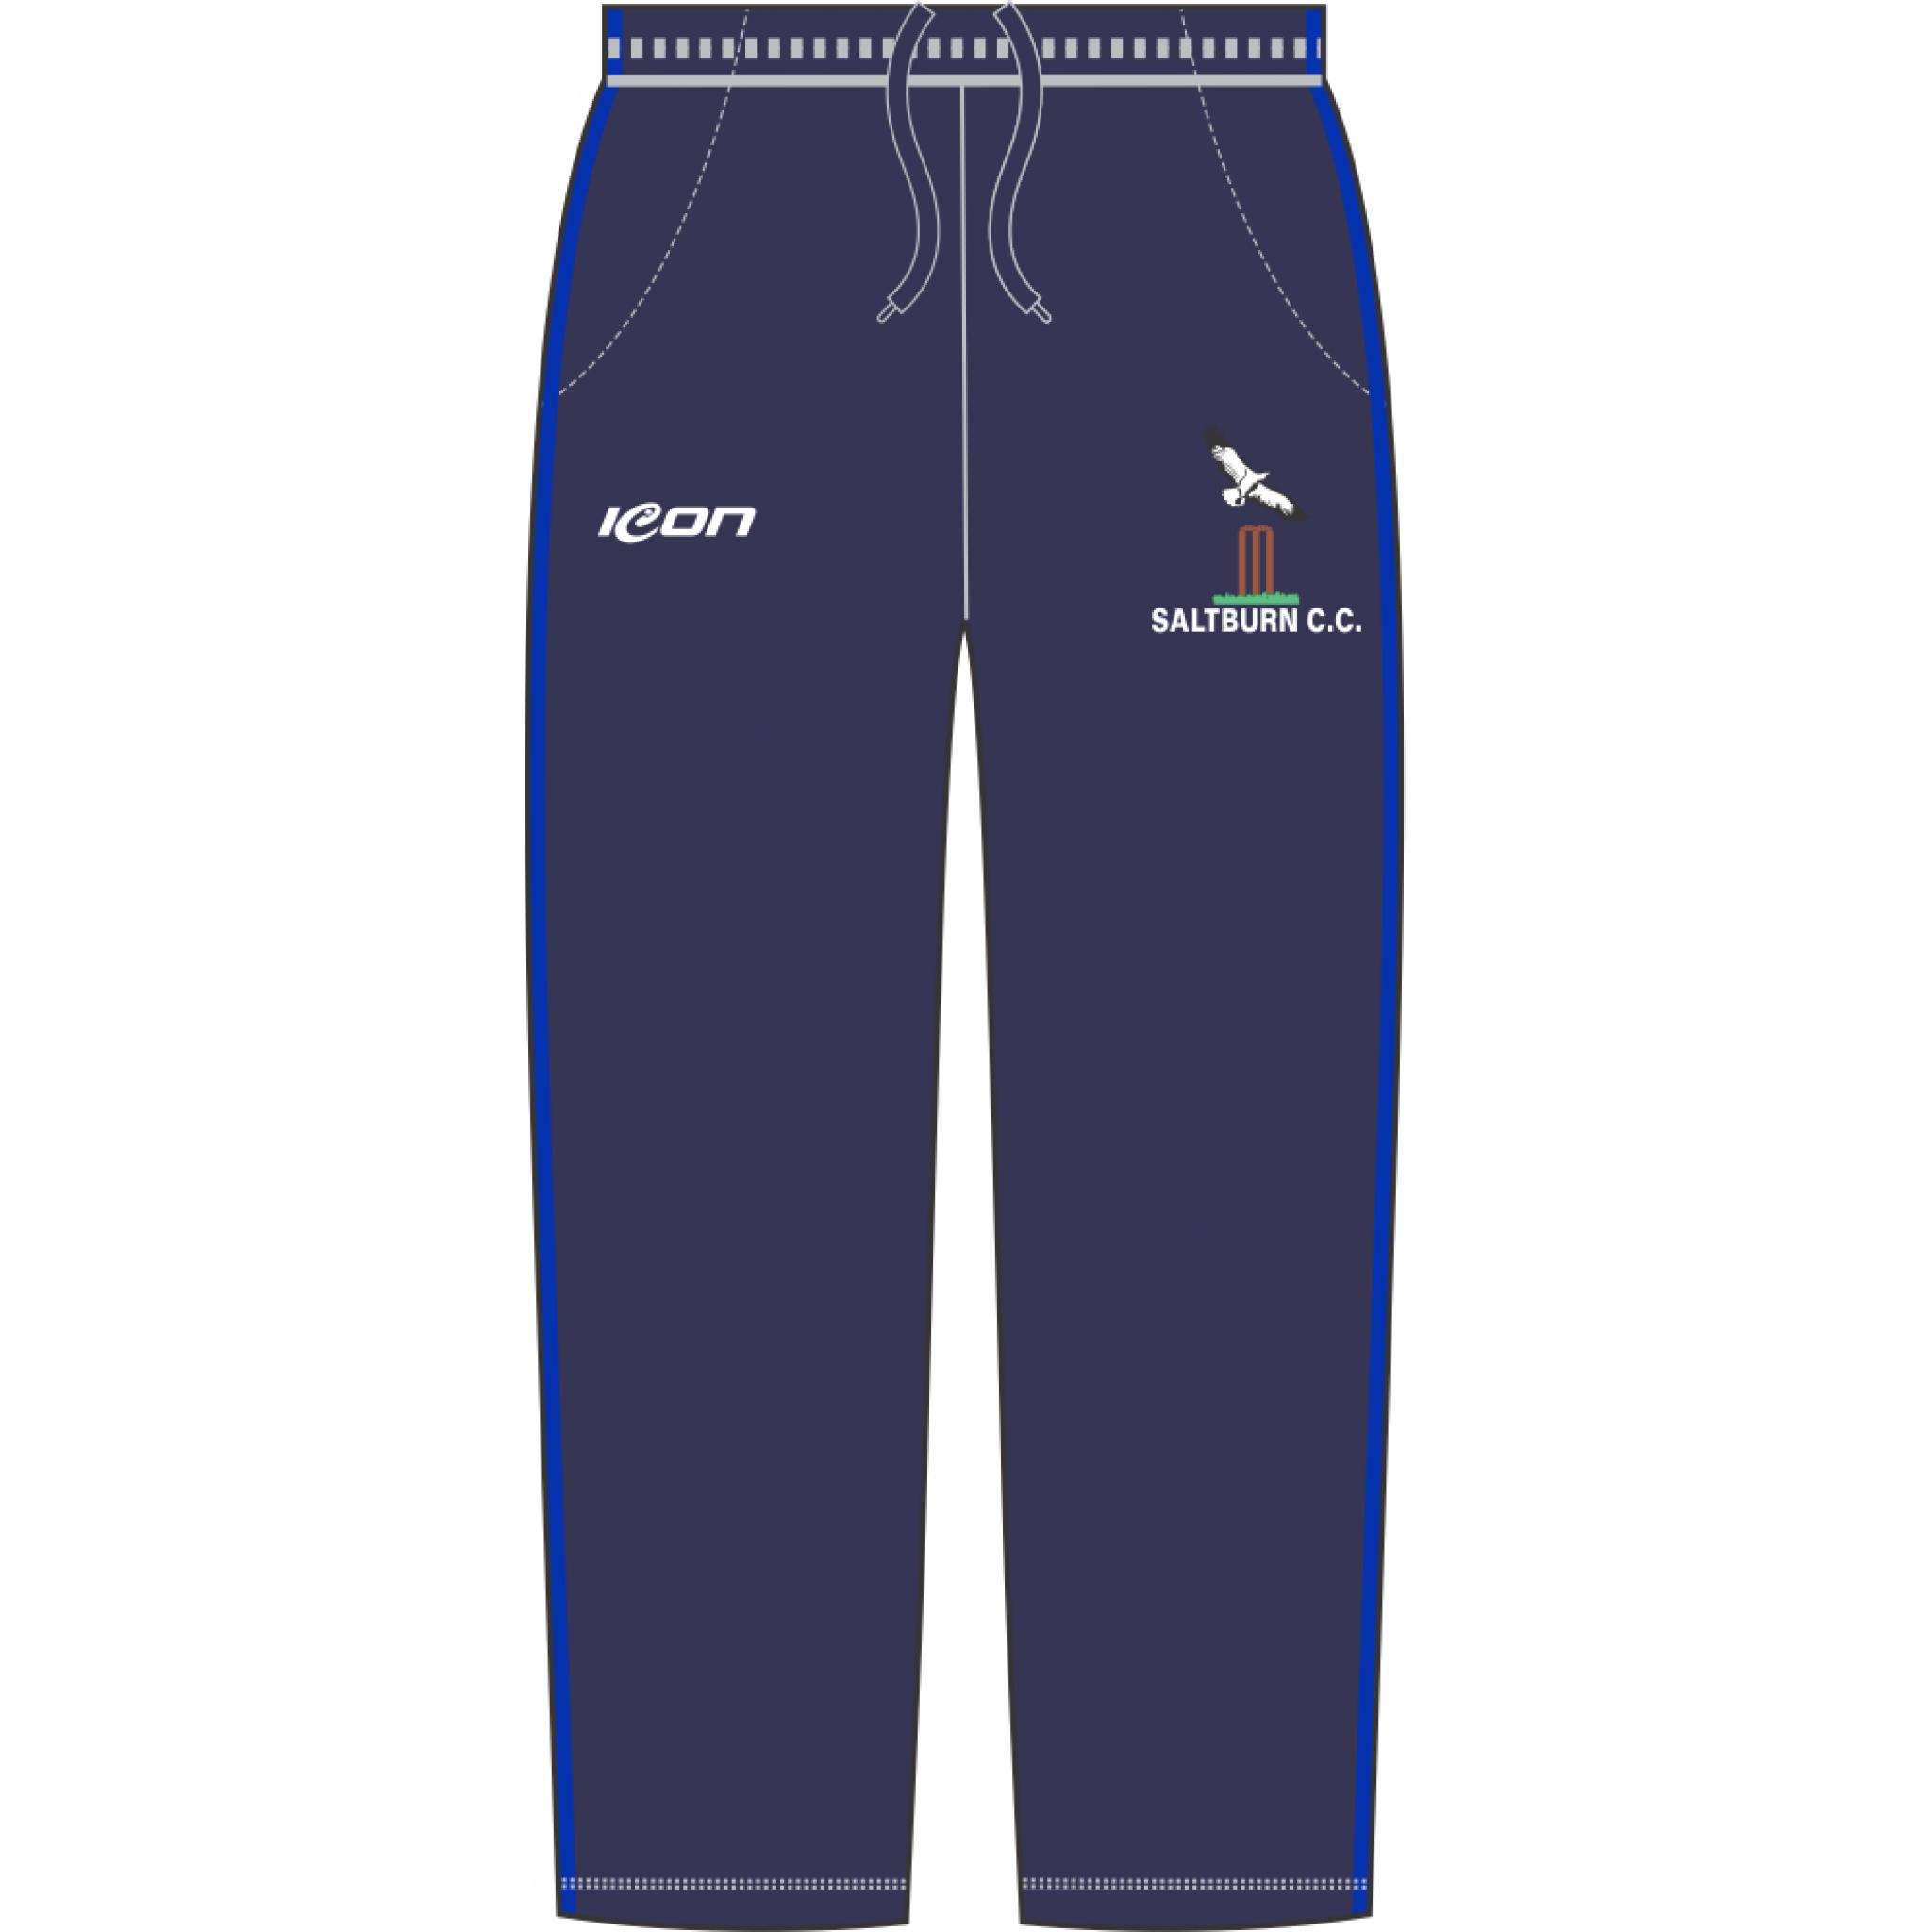 Saltburn CC T20 Cricket Pants